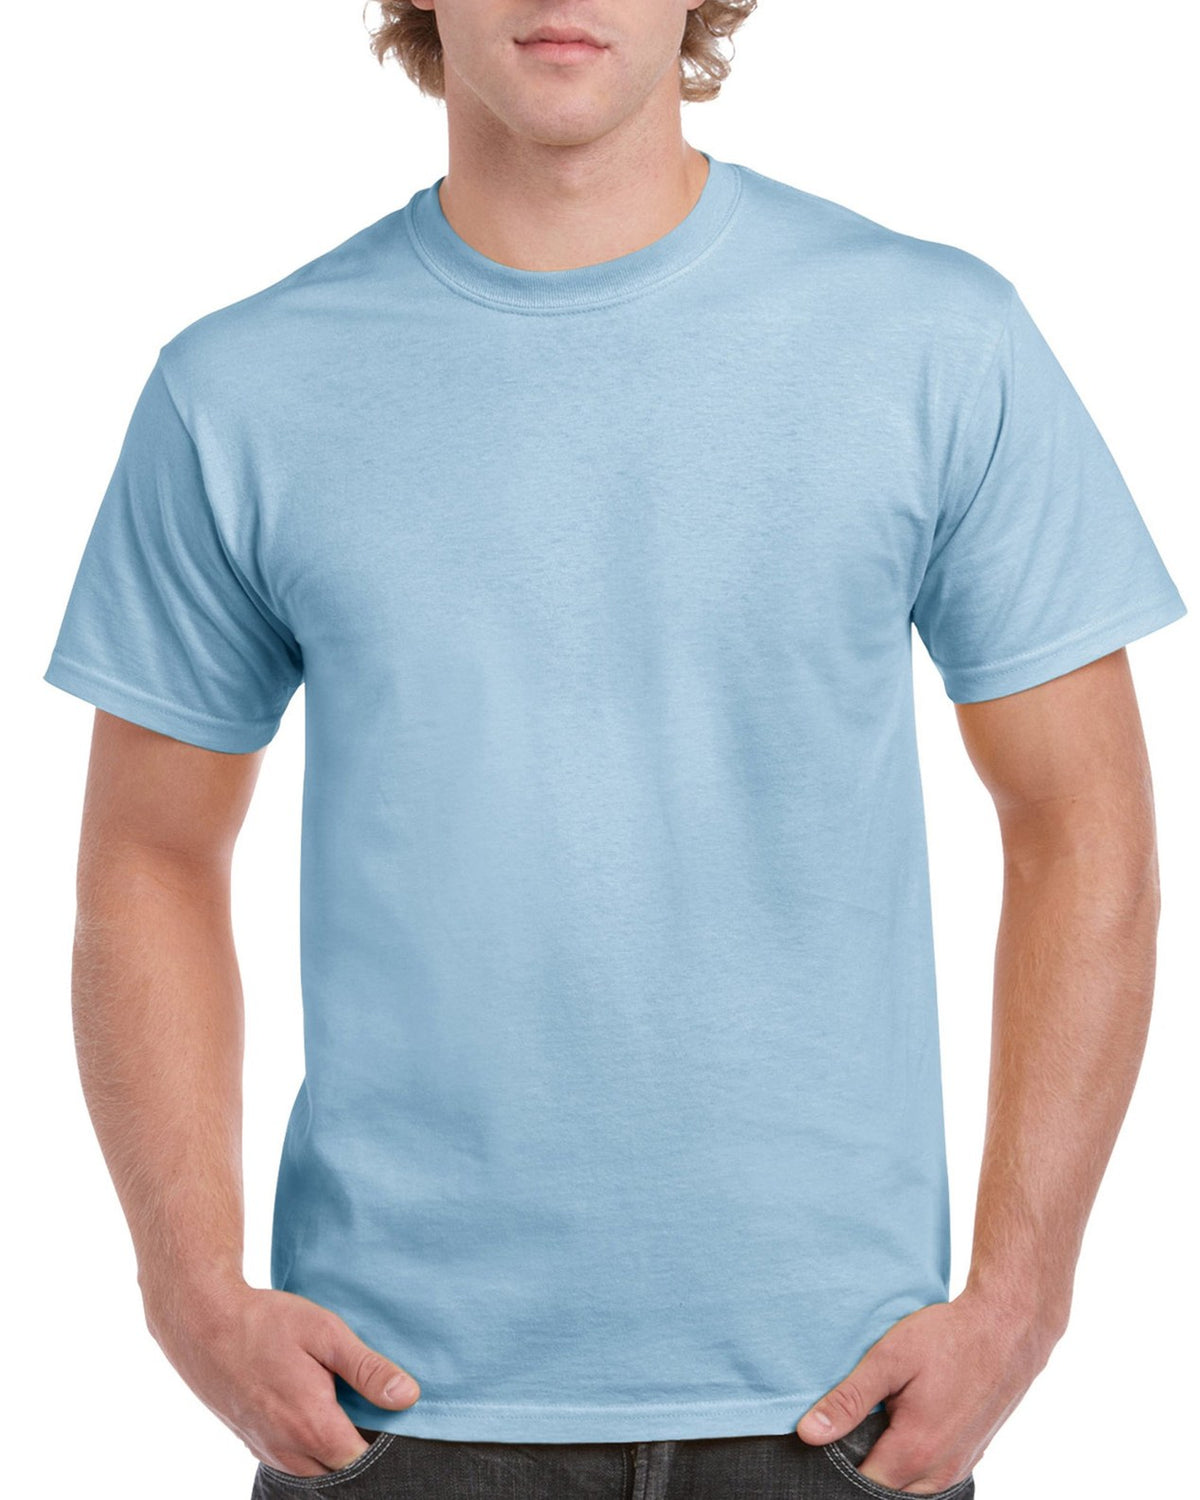 Quality T-Shirt Gildan oz Cotton 5000 Heavy Wholesale 5.3 1st Aviva – S-M-L-XL